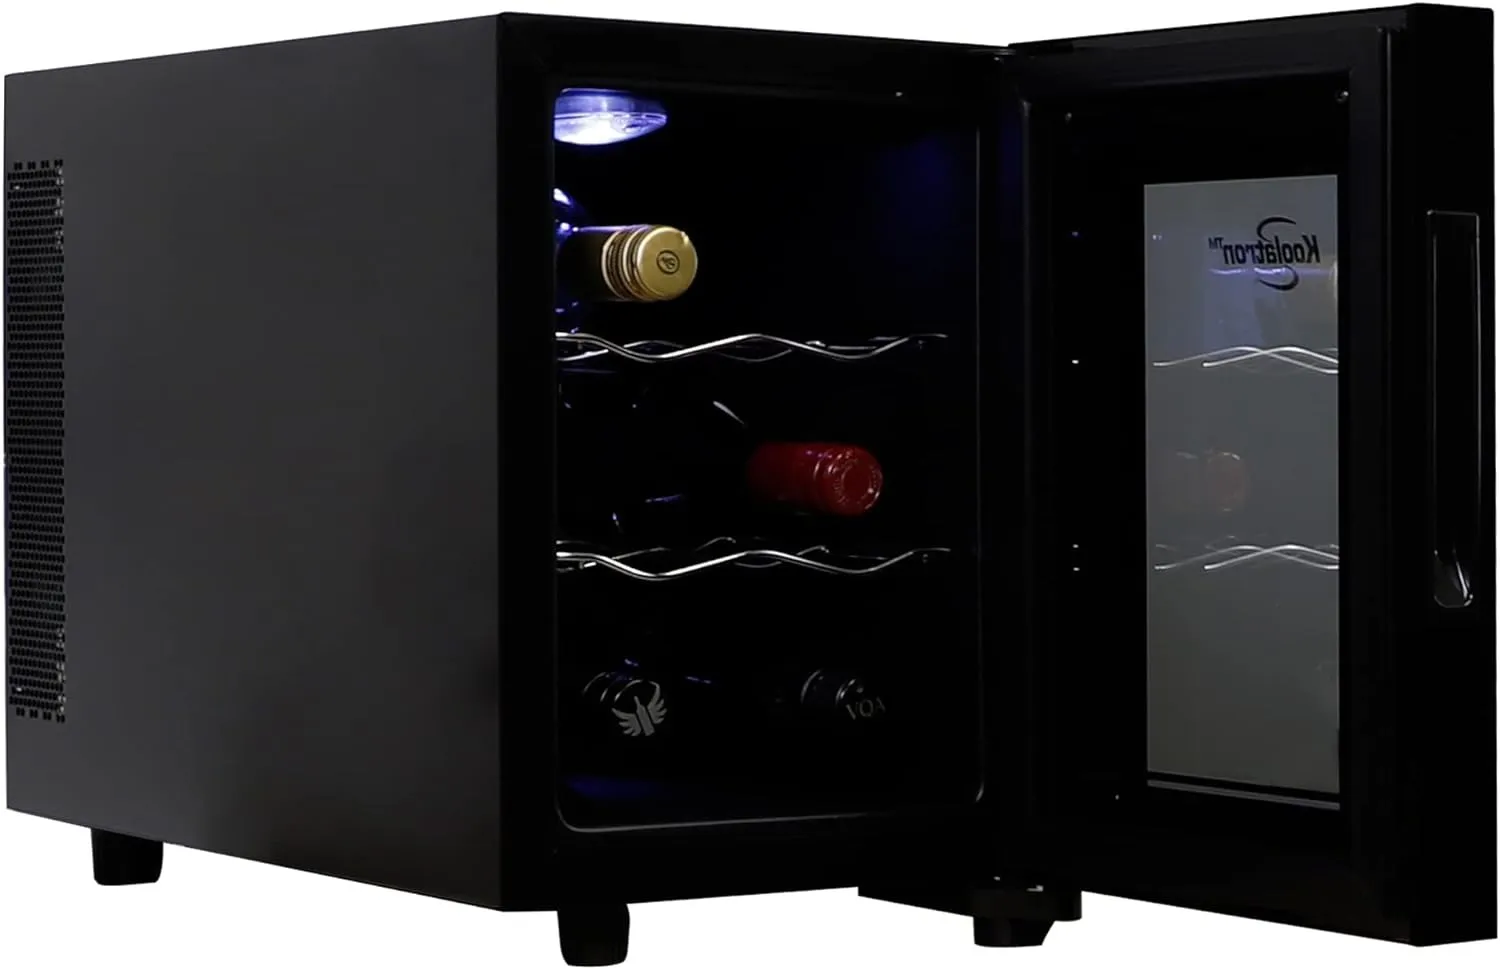  Koolatron 6 Şişe Şarap Soğutucu, Siyah, Termoelektrik Şarap Buzdolabı, 0.65 Cu. ft. (16L), bağımsız şarap mahzeni, kırmızı, beyaz ve köpüklü şarap depolama küçük mutfak için